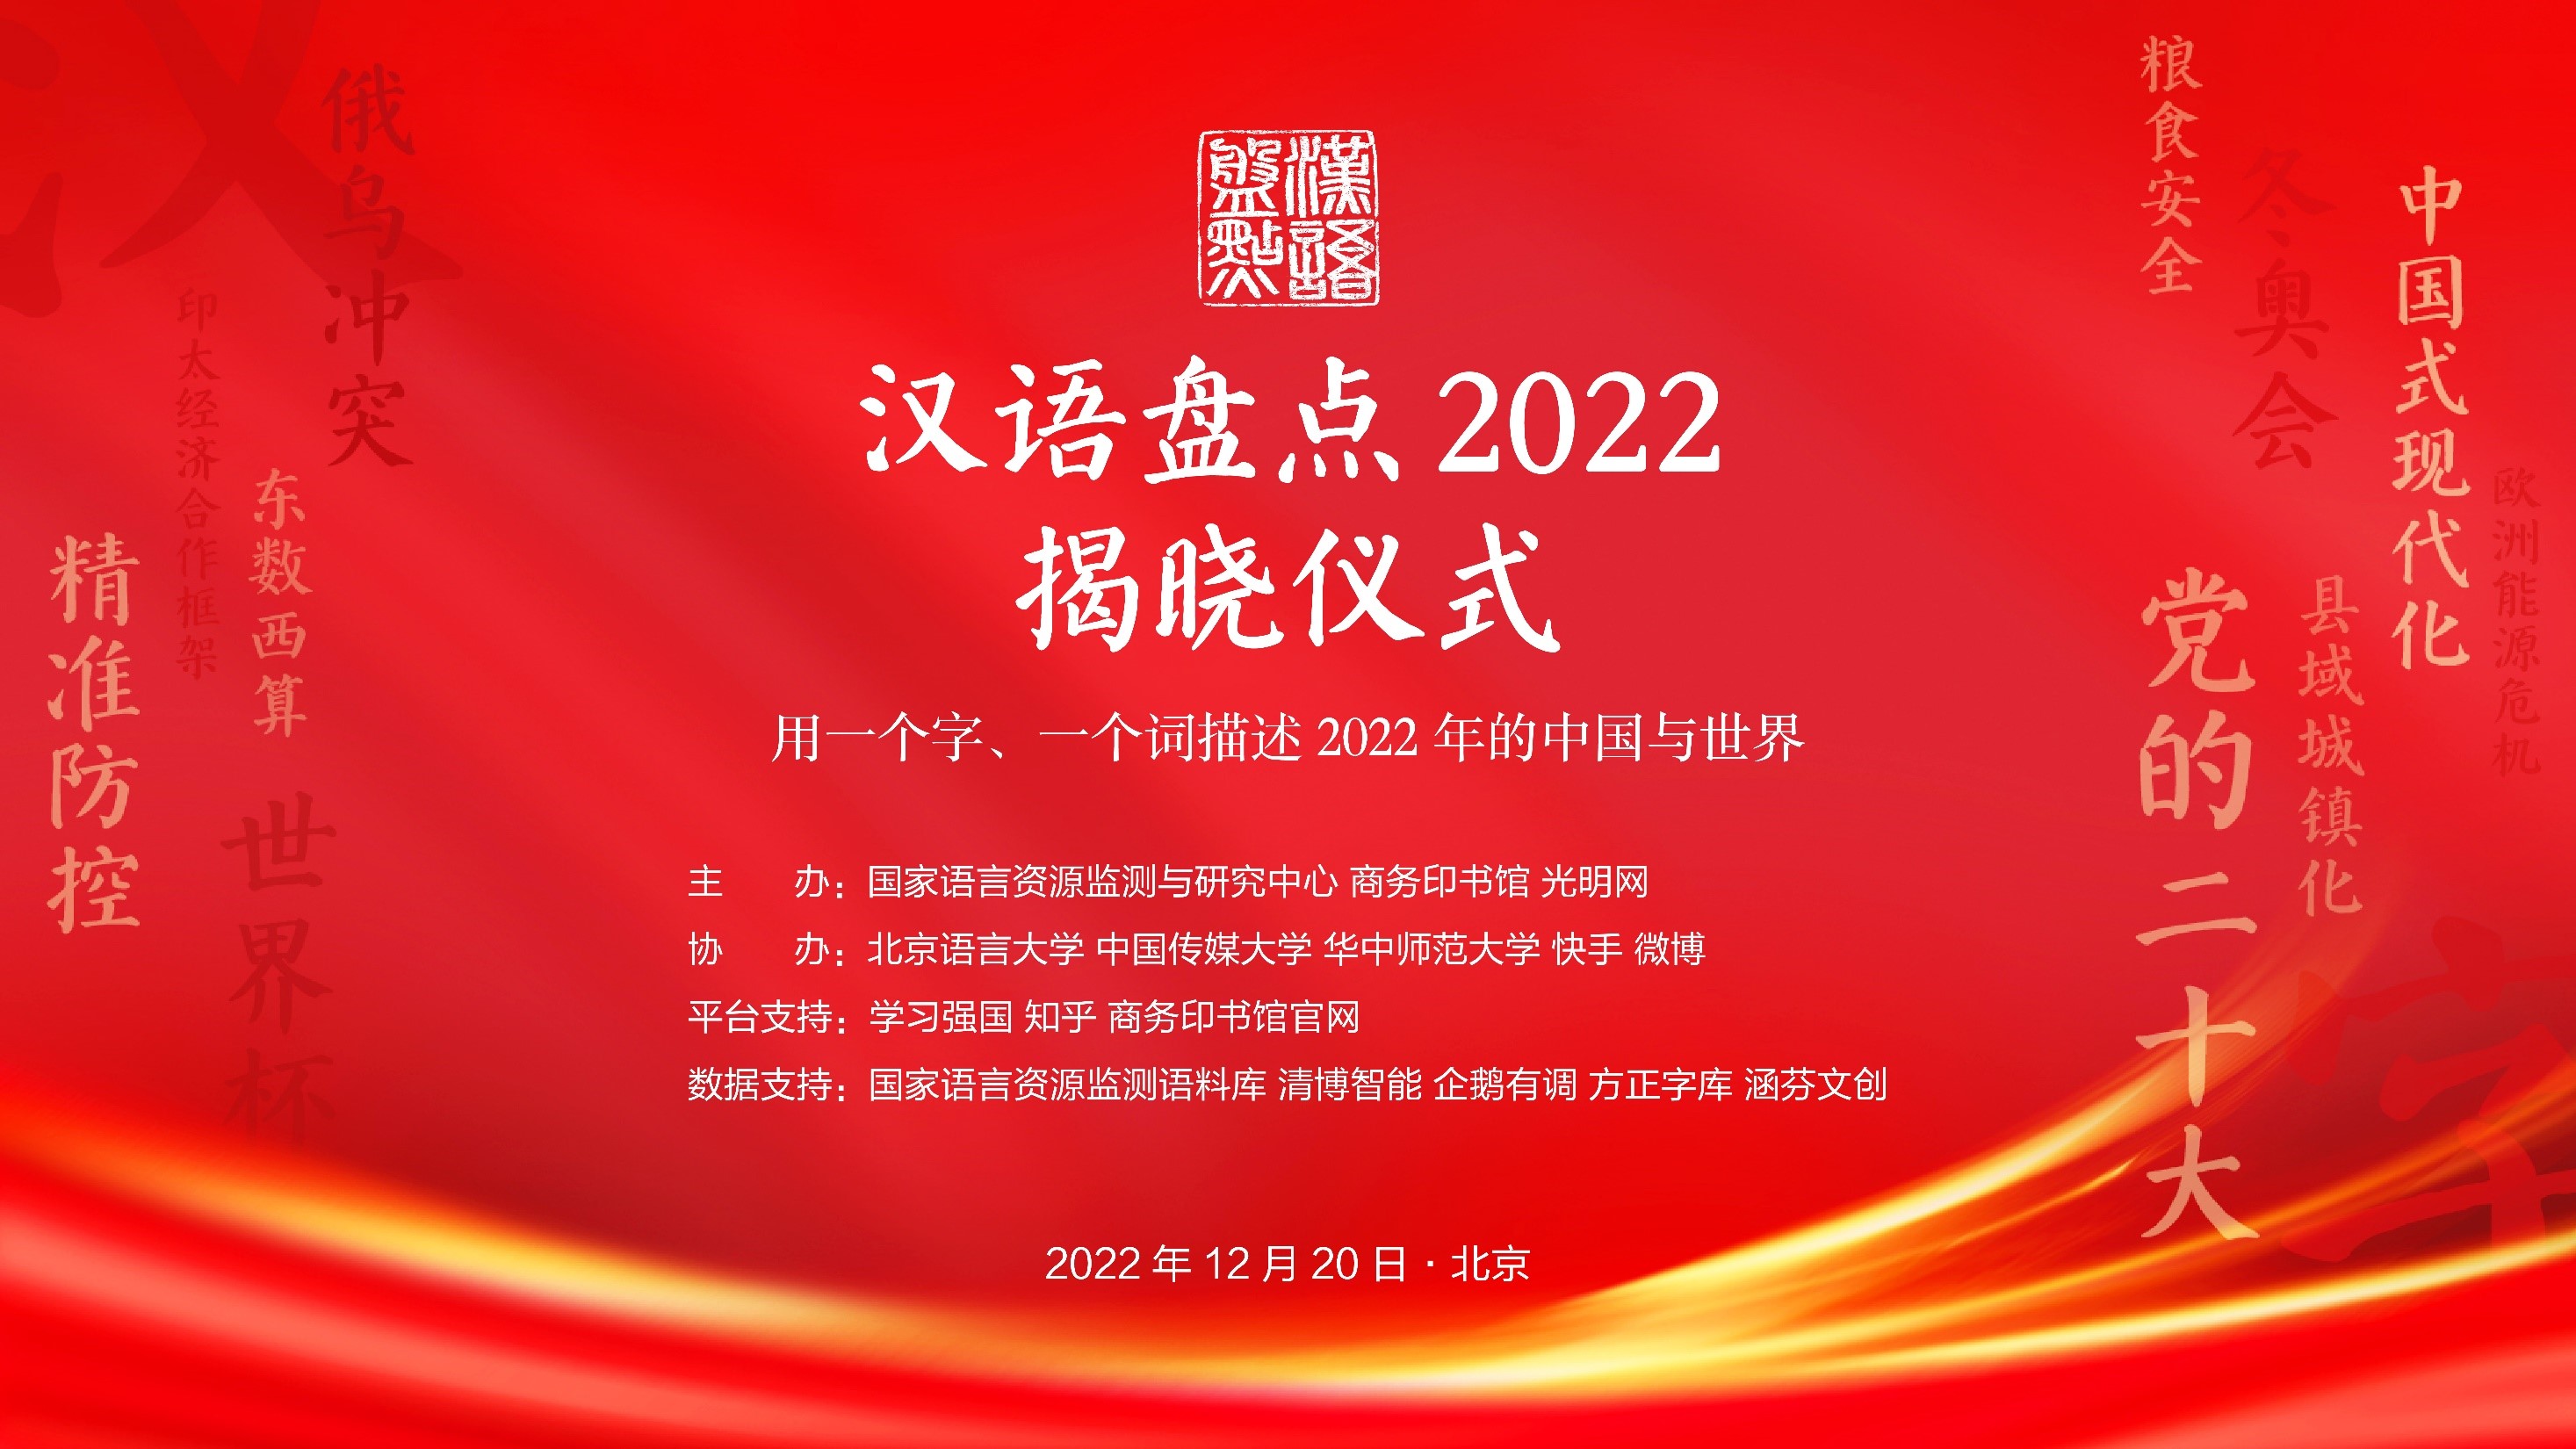 新闻 \| “ 汉语盘点2022 ”年度字词权威发布